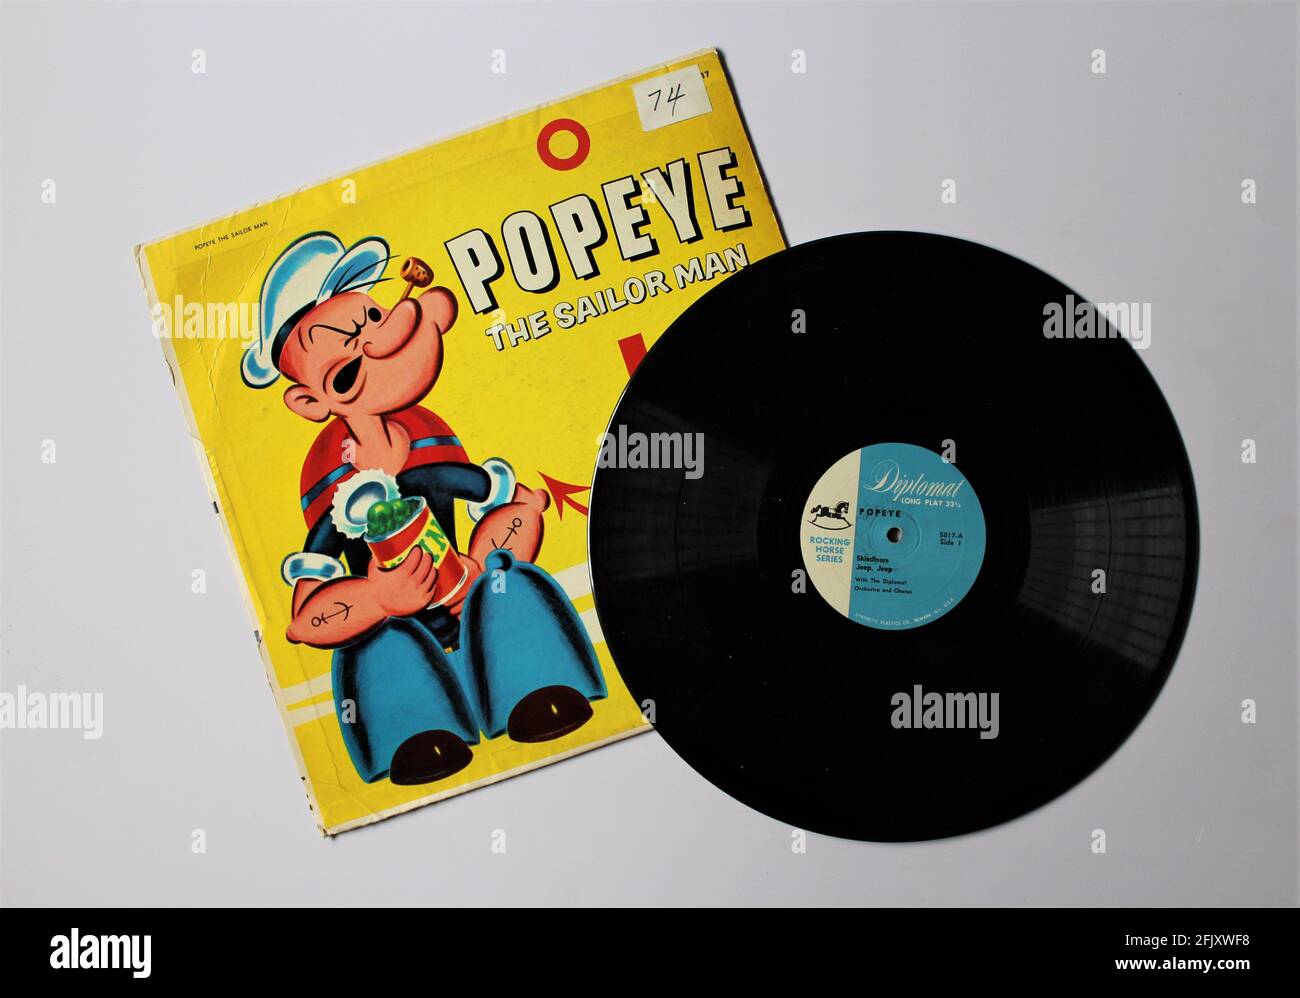 Popeye l'album Sailor Man su disco LP in vinile. Etichetta Peter Pan Records. Harry Welch come narratore e musica eseguita dall'orchestra di cavalli dondolanti Foto Stock